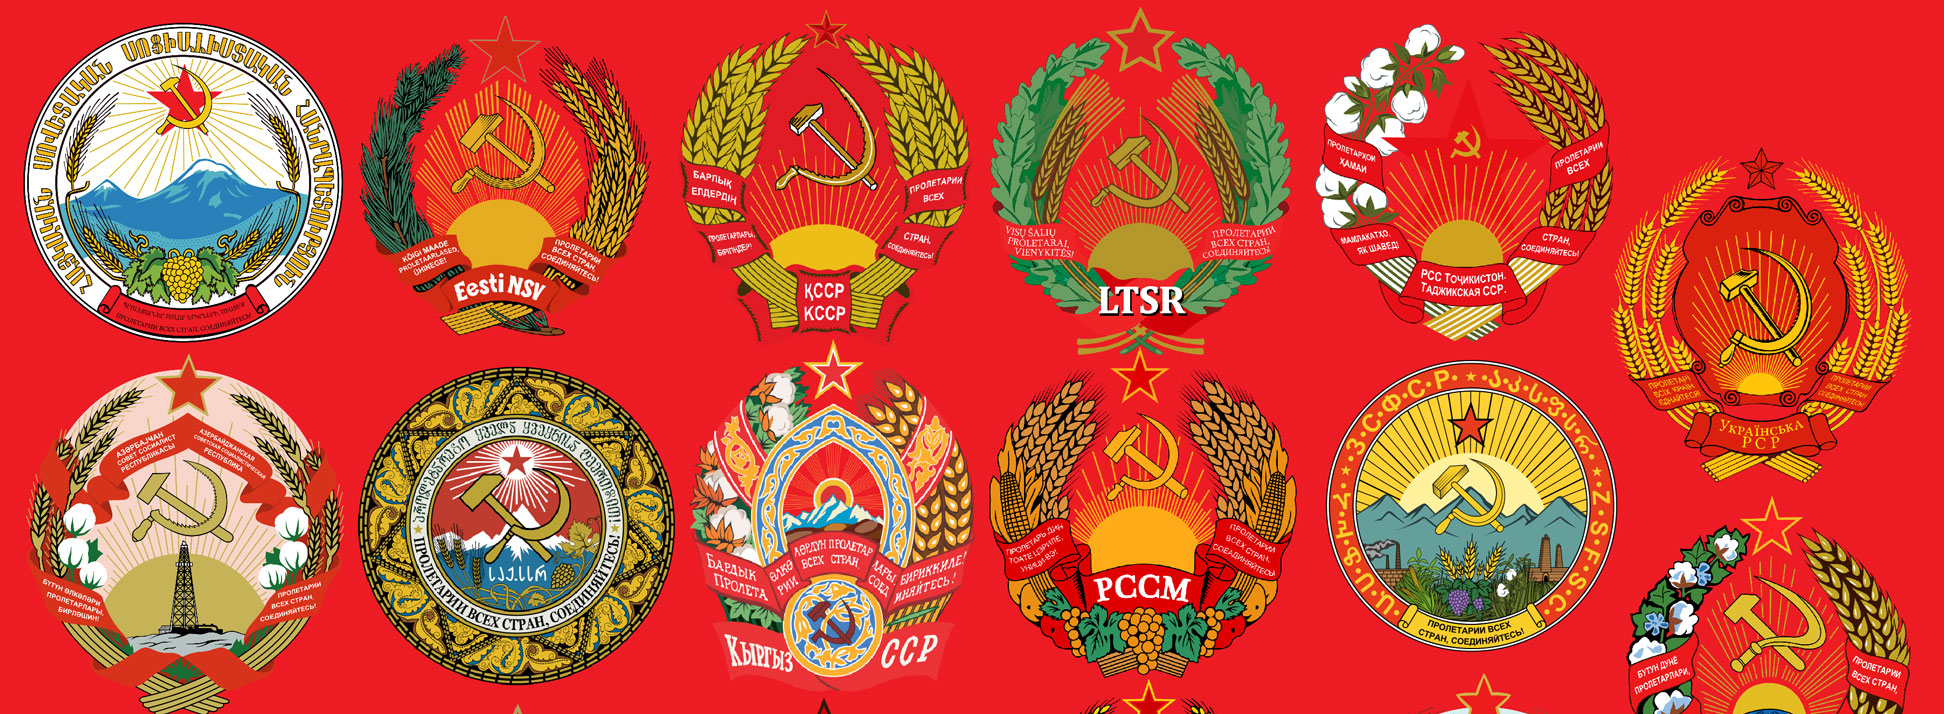 Russian emblems of the Soviet era